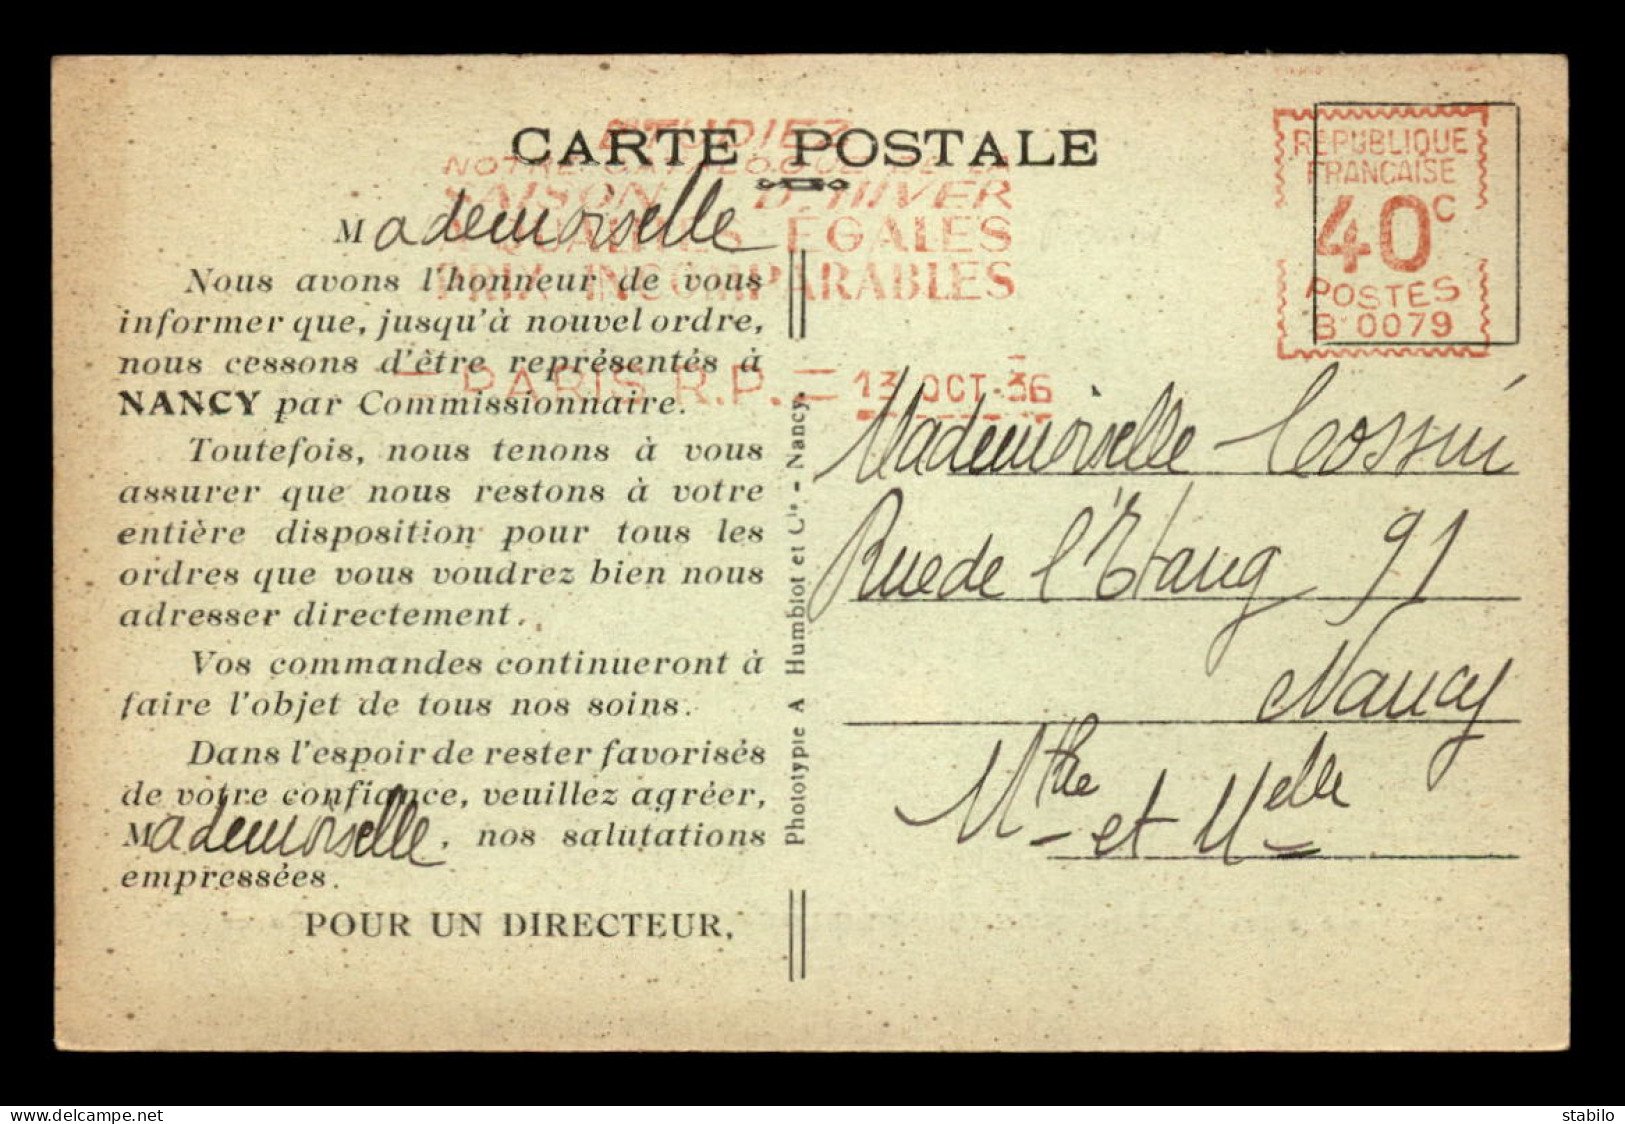 75 - PARIS 1ER - POUPONNIERE DES GRANDS MAGASINS DU LOUVRE - FONDATION DE MME ROGER DOUINE - UN DOTOIR - Paris (01)